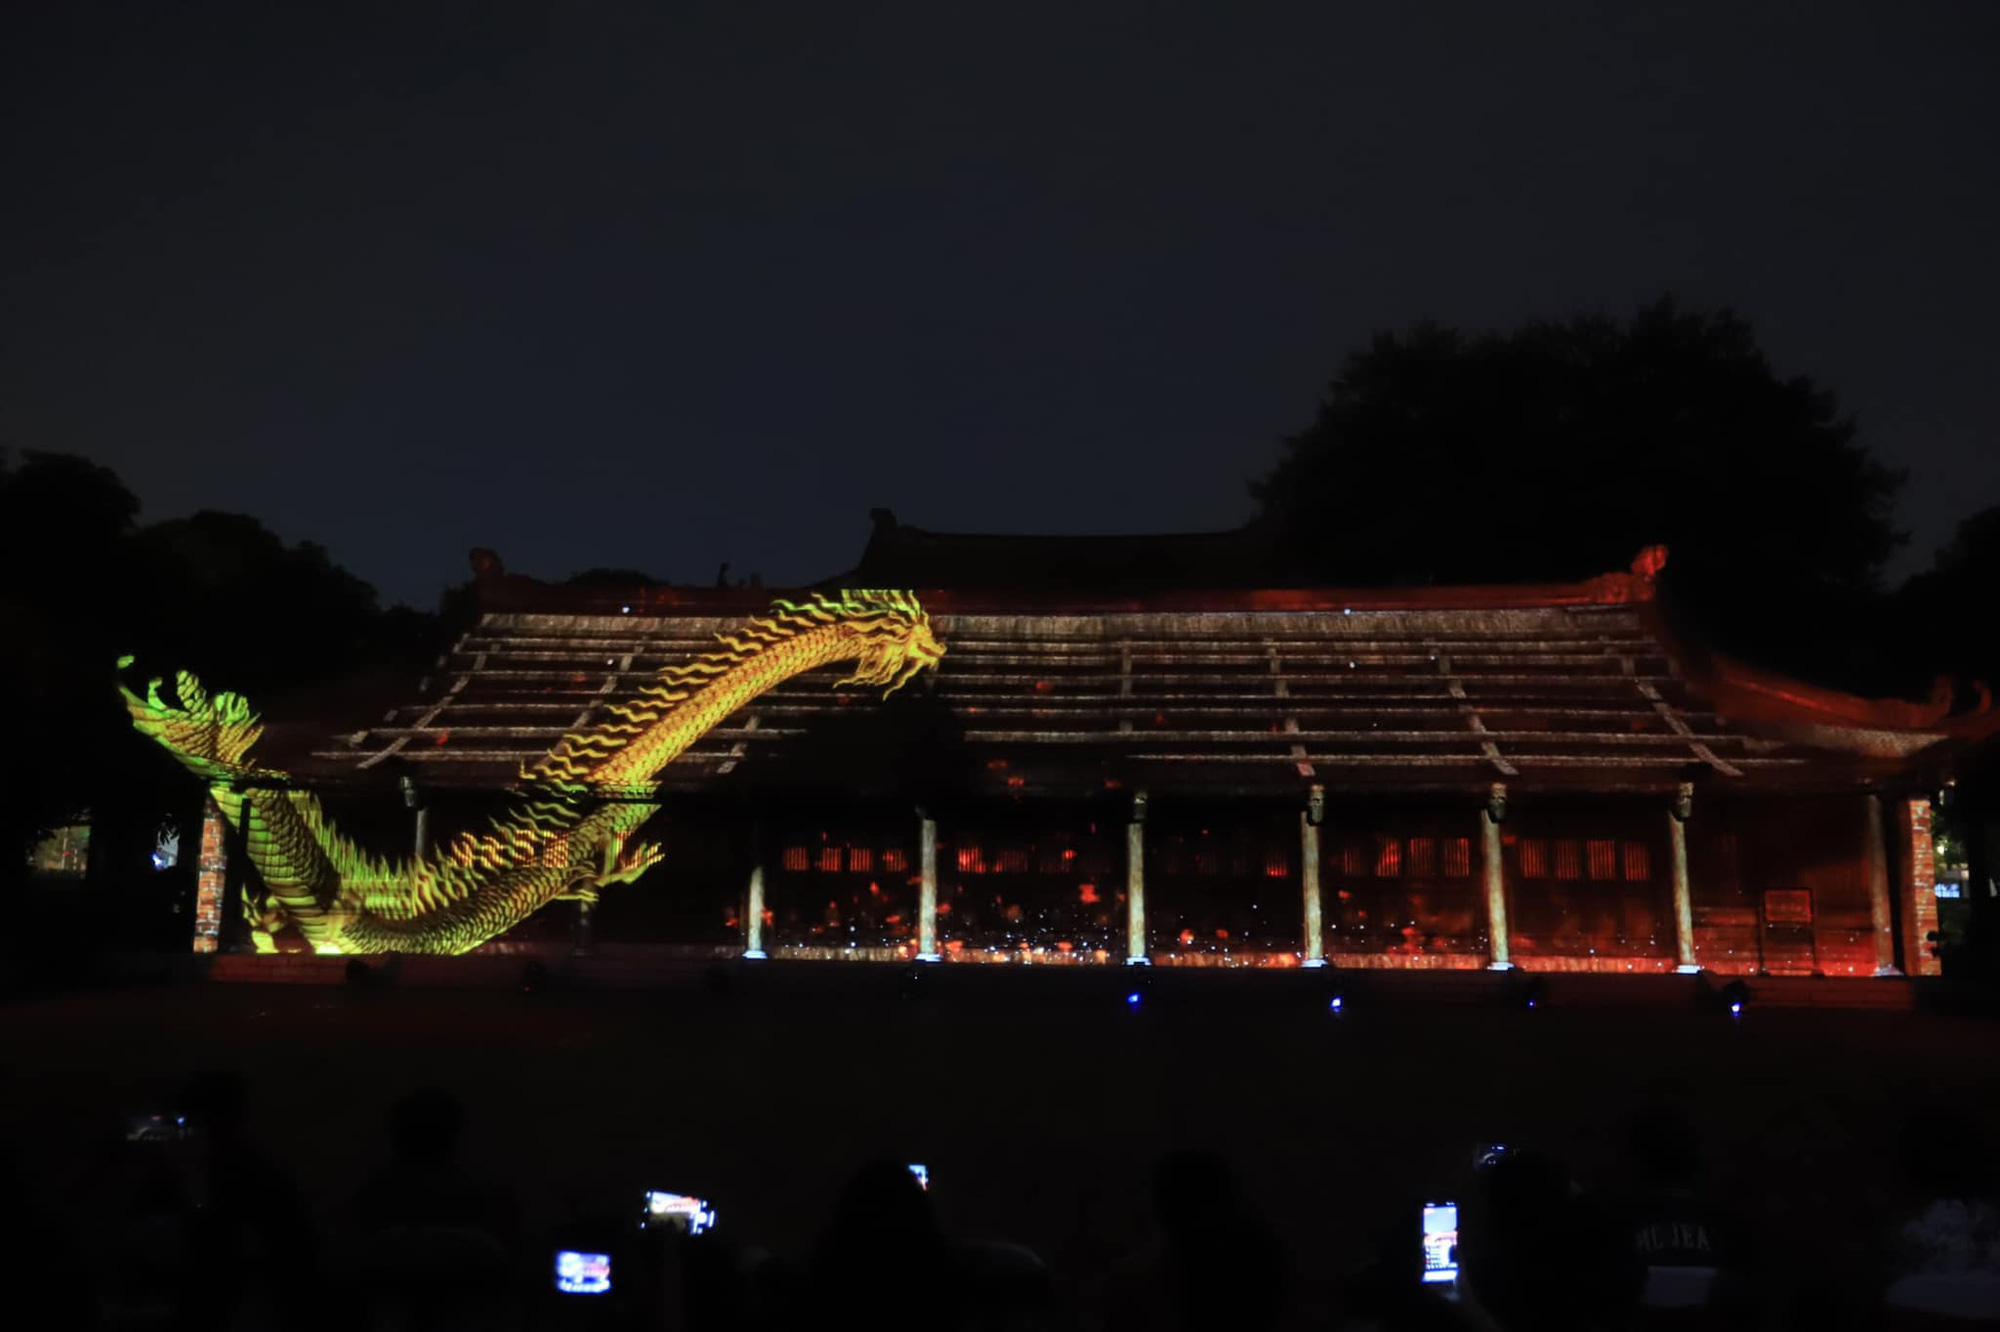 Thêm một điểm tham quan ở Hà Nội mở Tour đêm: Trình diễn 3D hoành tráng, du khách hào hứng vì đã đợi nhiều năm - Ảnh 6.